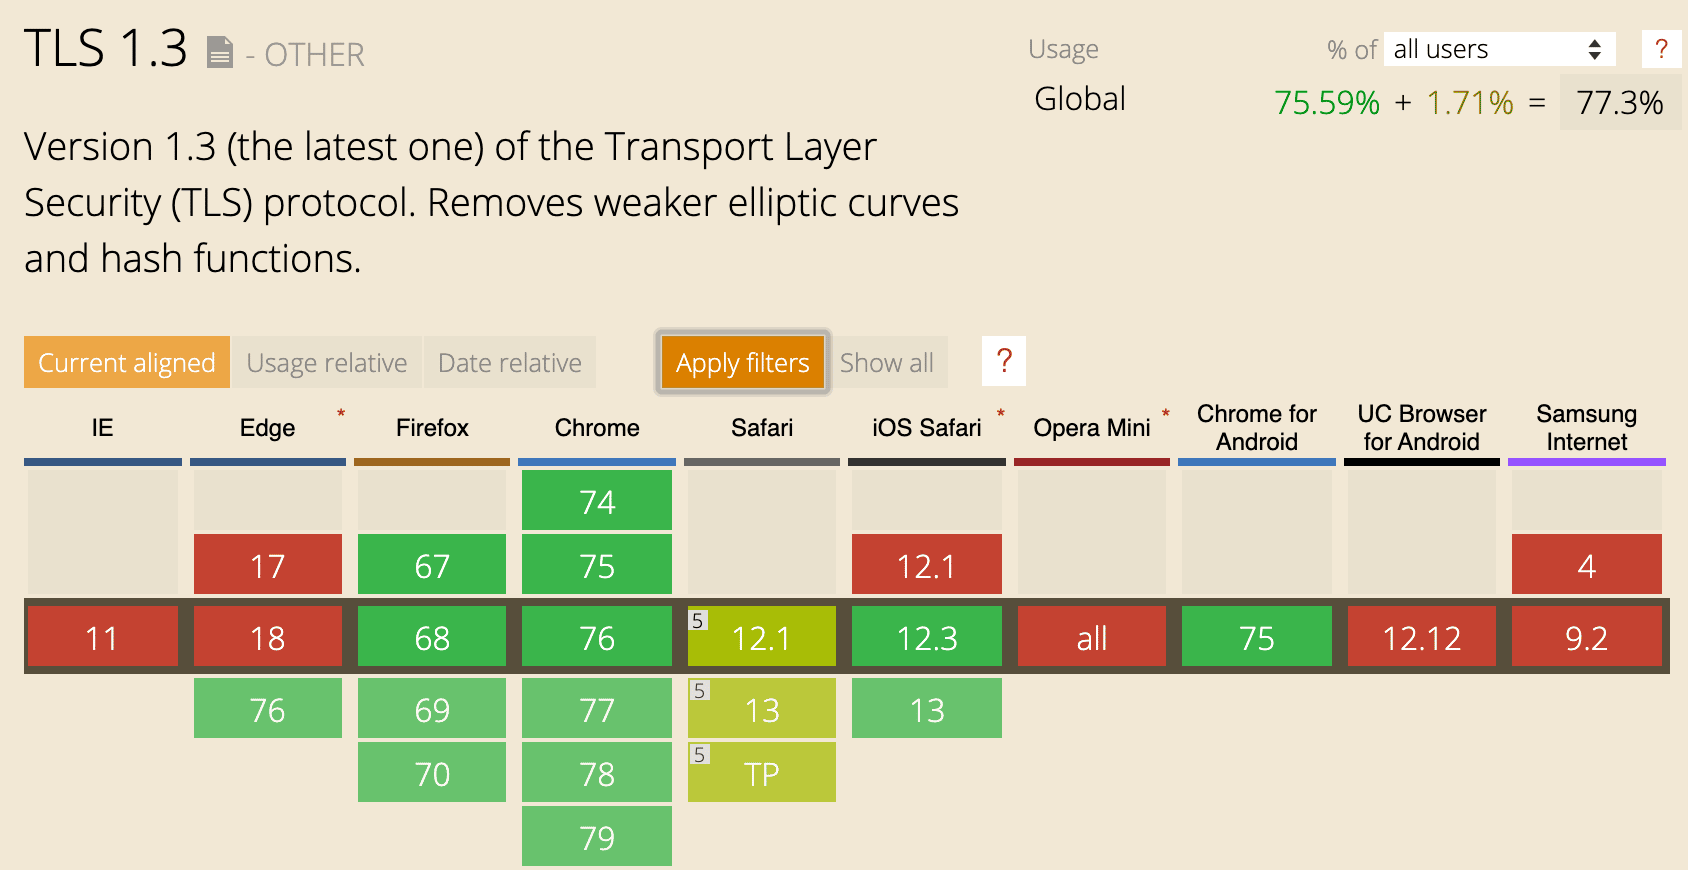 TLS 1.3 browser support